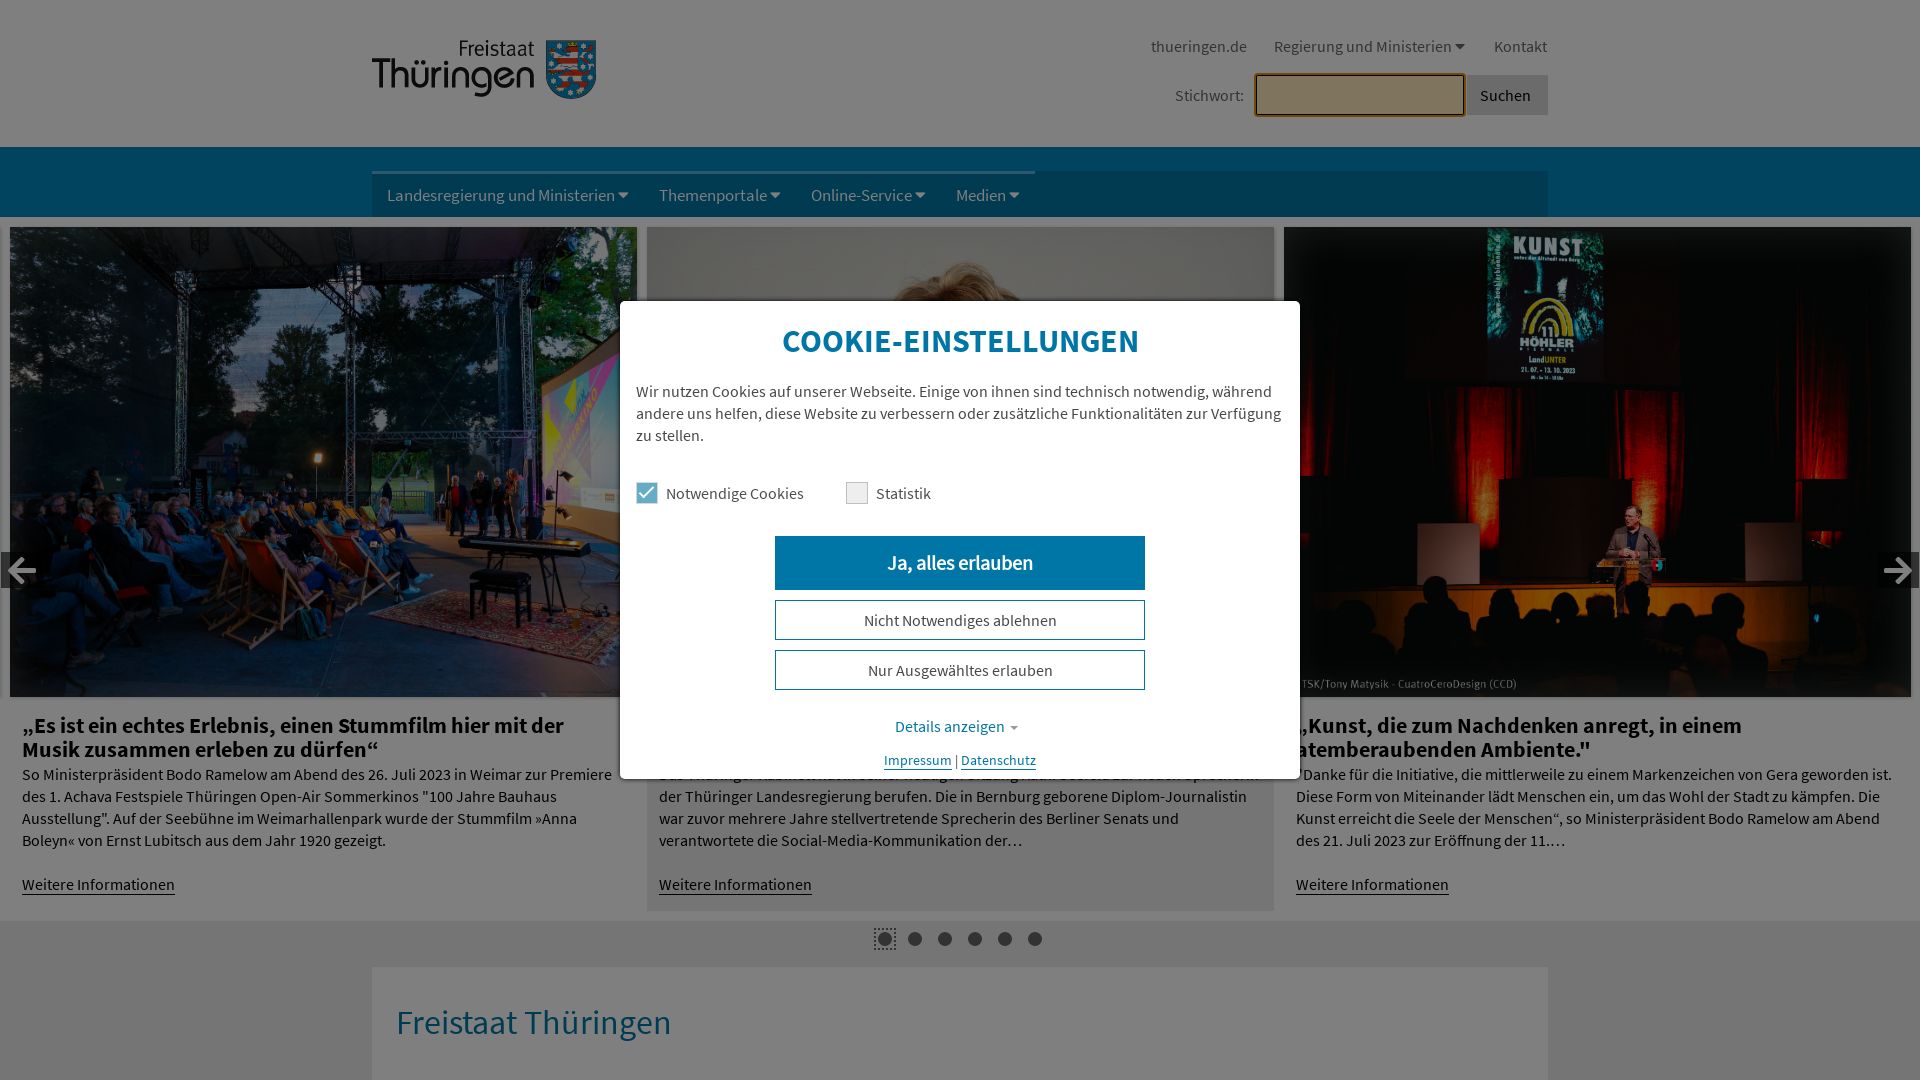 Status do site thueringen.de está   ONLINE